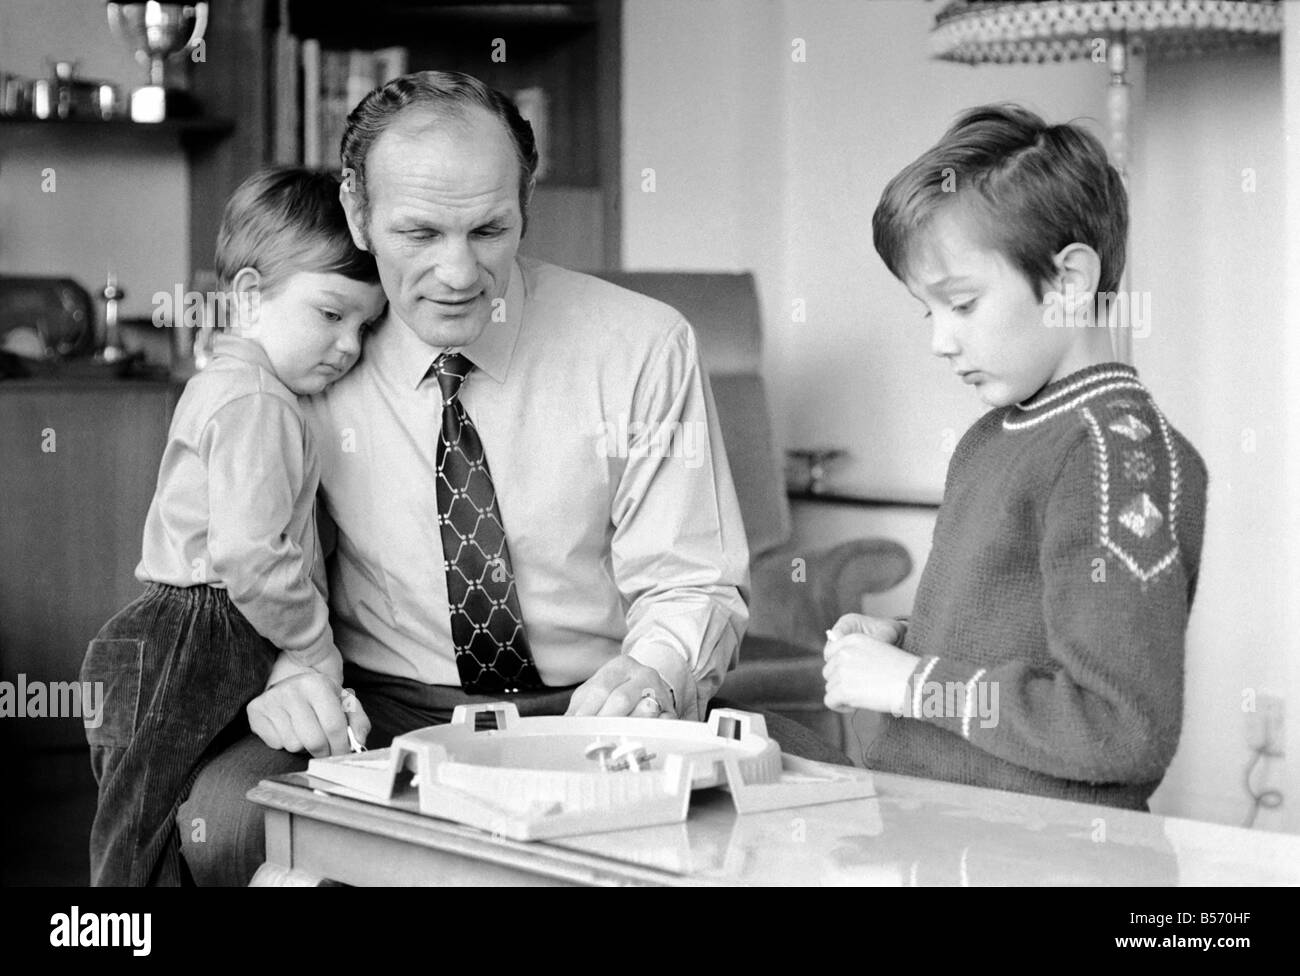 Le boxeur britannique Henry Cooper photographiée avec fils Henry Marco âgés de 10 (à droite) et 3 ans John Pietro jouant avec un jeu de toupies à Wembley son accueil. Décembre 1970 ;70-11690 Banque D'Images